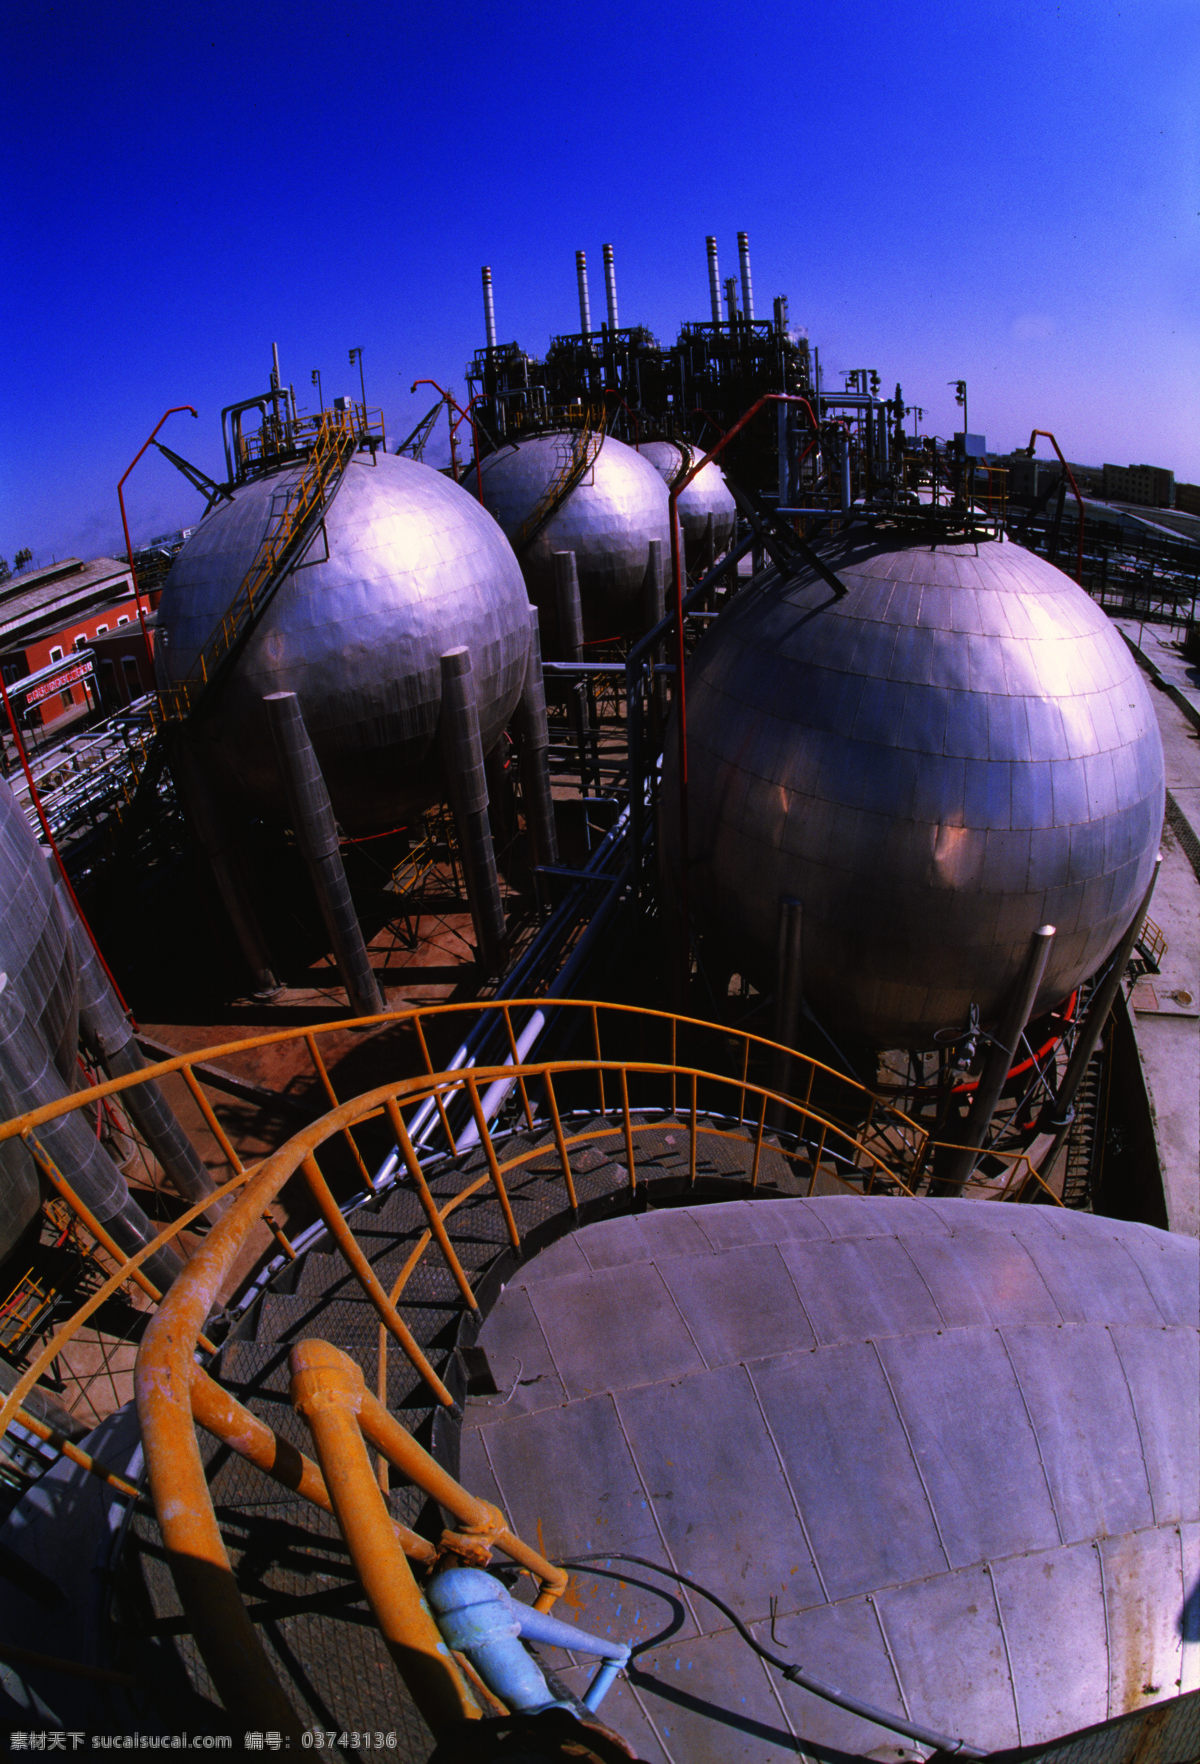 石油天然气罐 石油罐 天然气罐 圆罐 蓝天 球体罐 能源 石油管道 天然气管道 管道梯 工业生产 现代科技